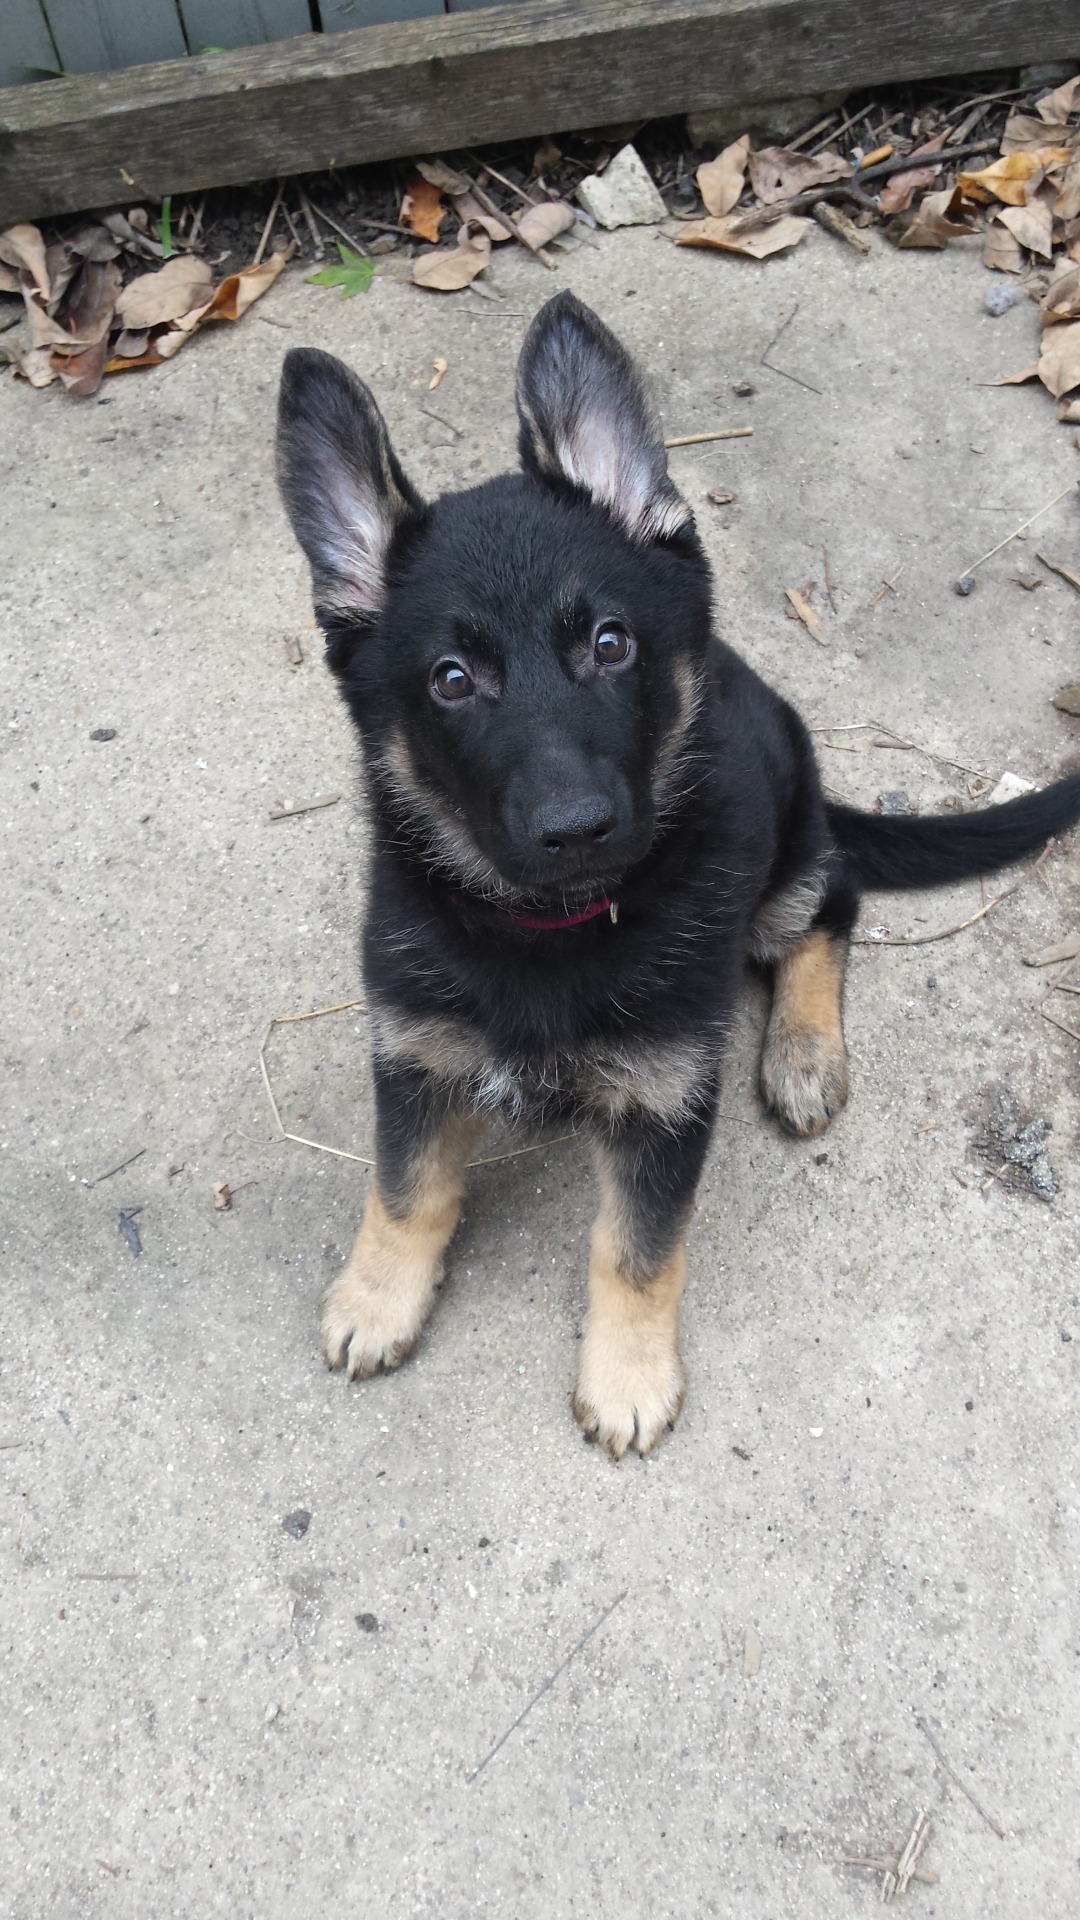 handsomedogs:  Gypsy. 12 week old German Shepherd.